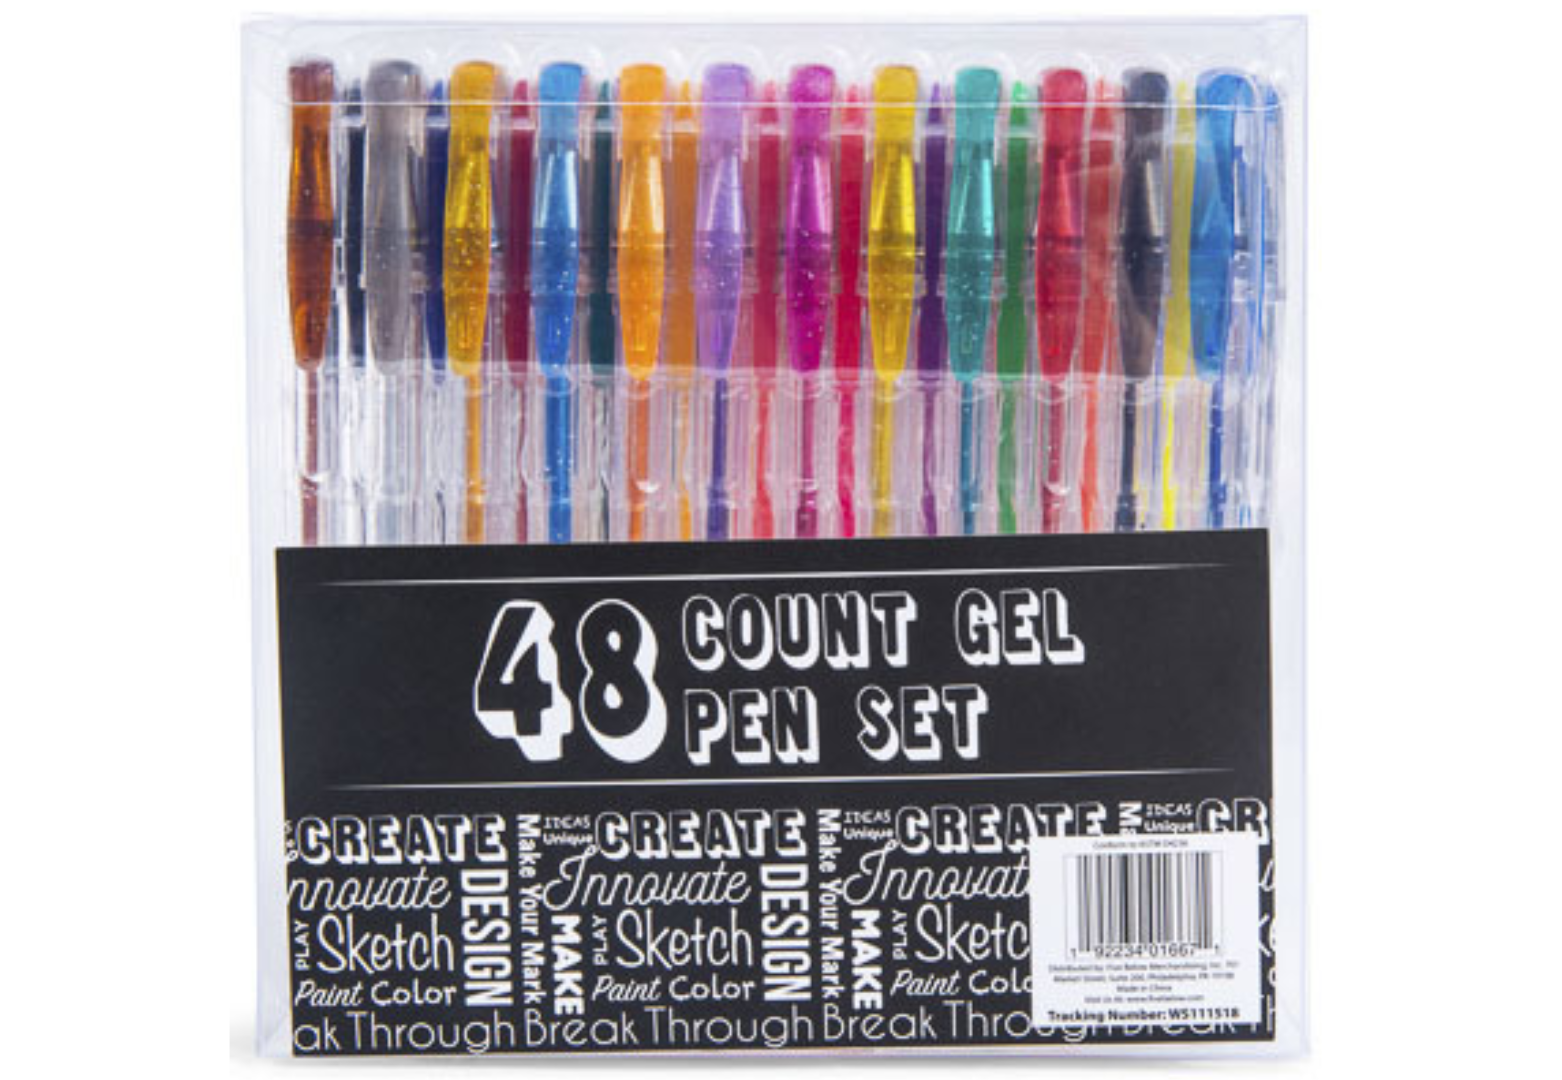 60 Count Gel Pen Set